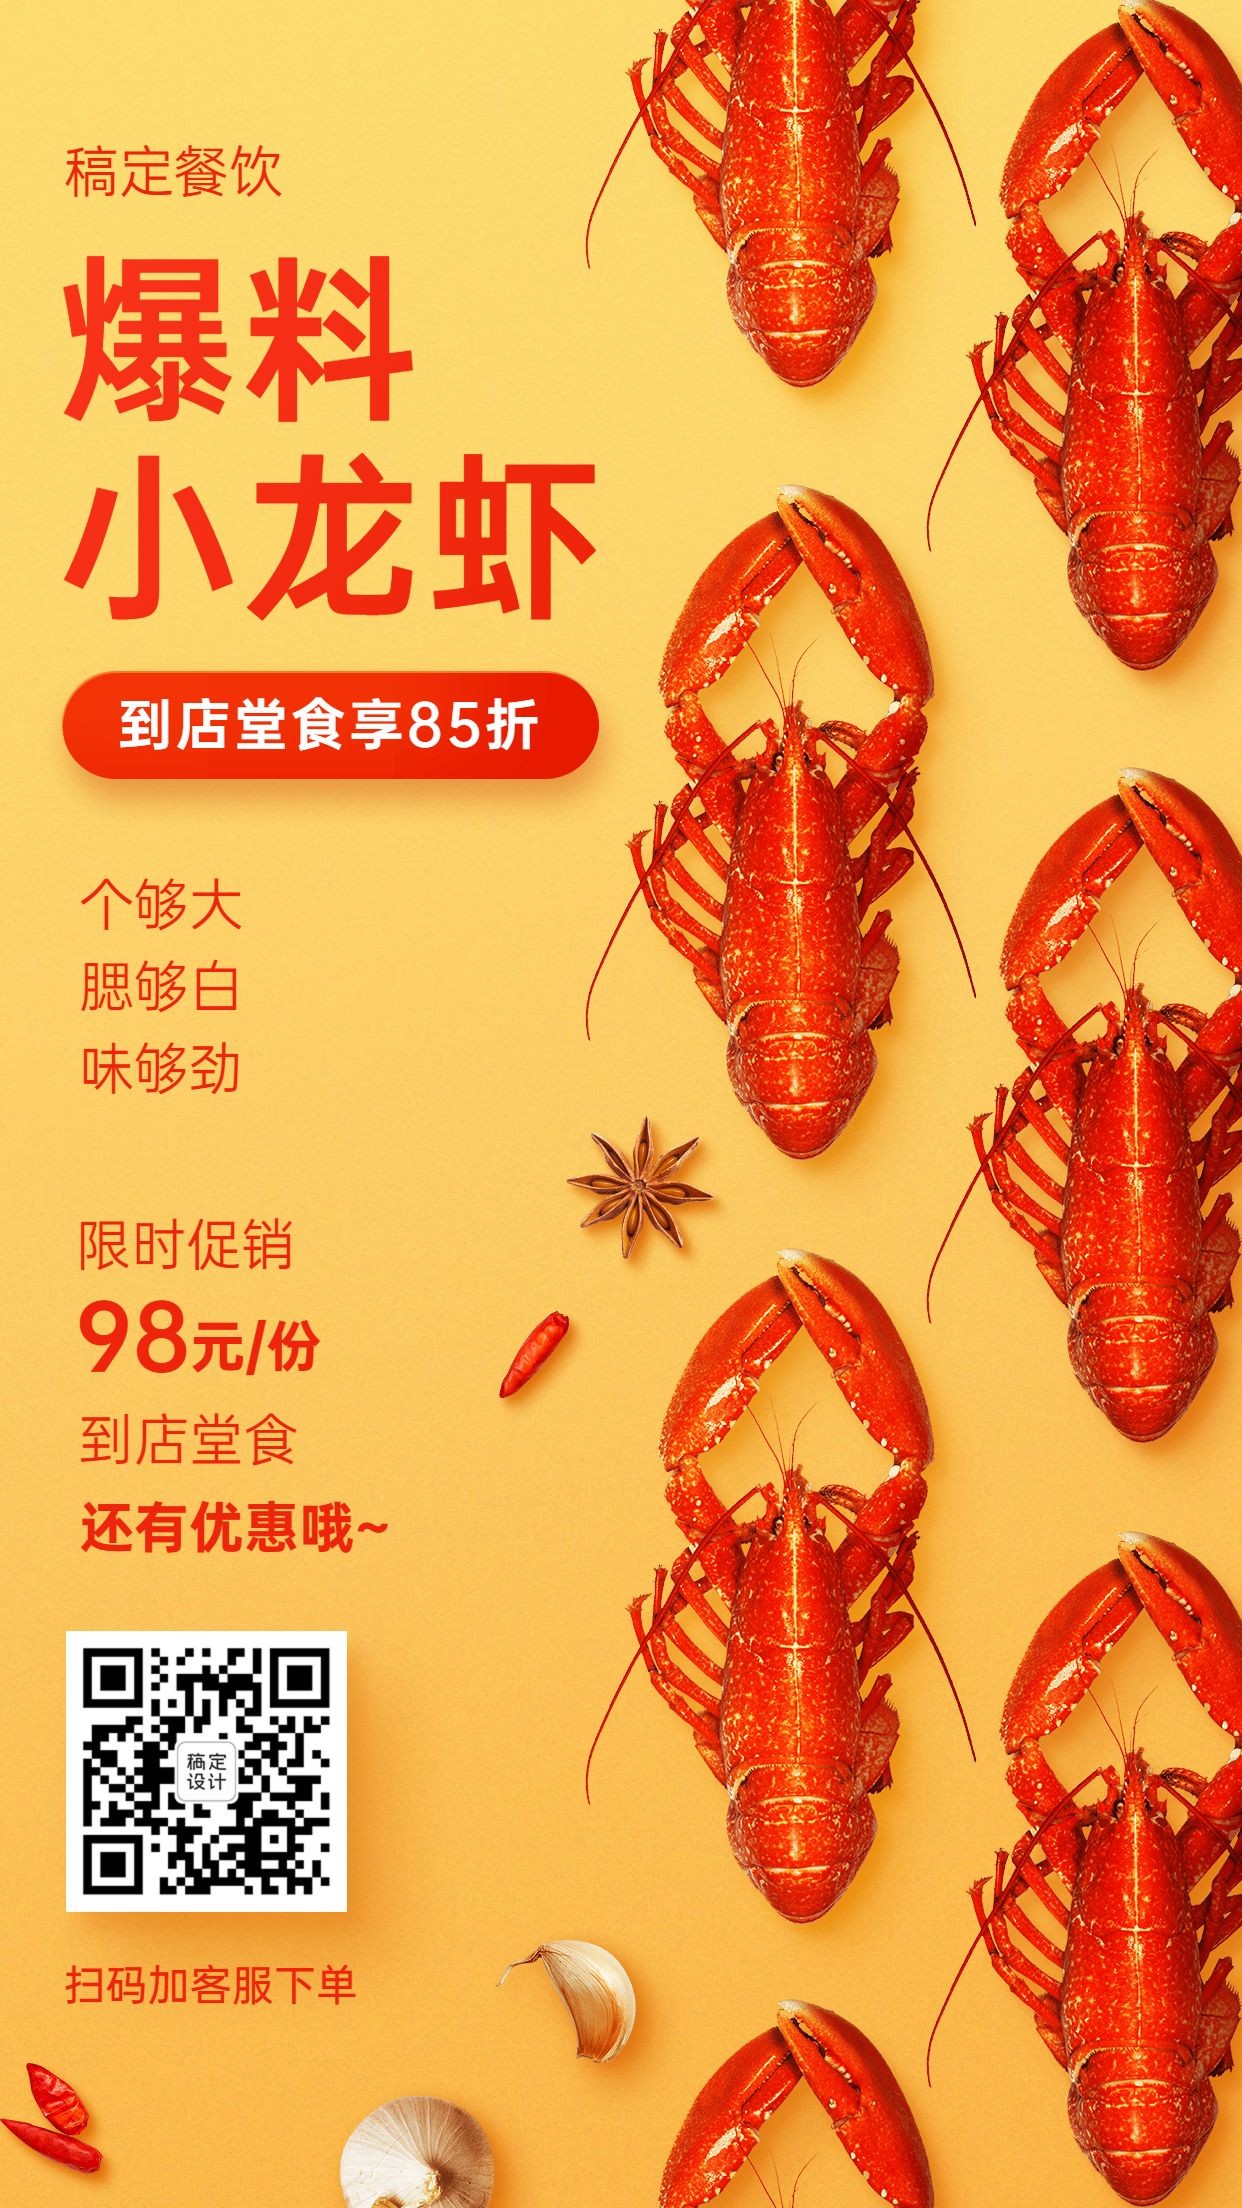 生鲜美食小龙虾促销海报预览效果